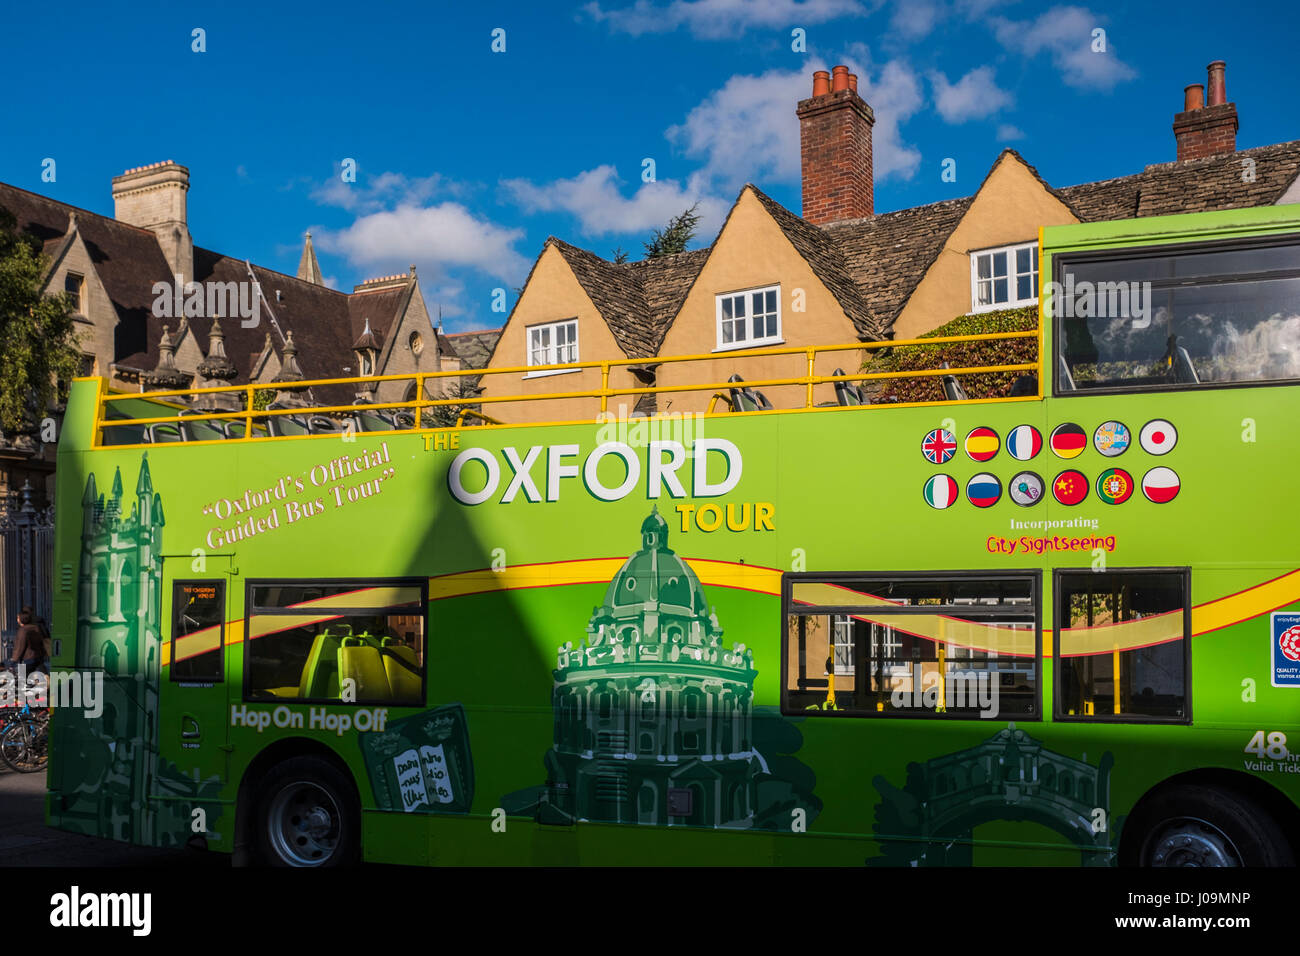 Oxford ist eine Stadt, die weltweit bekannt als die Heimat der University of Oxford, die älteste Universität in der englischsprachigen Welt. England, Großbritannien Stockfoto